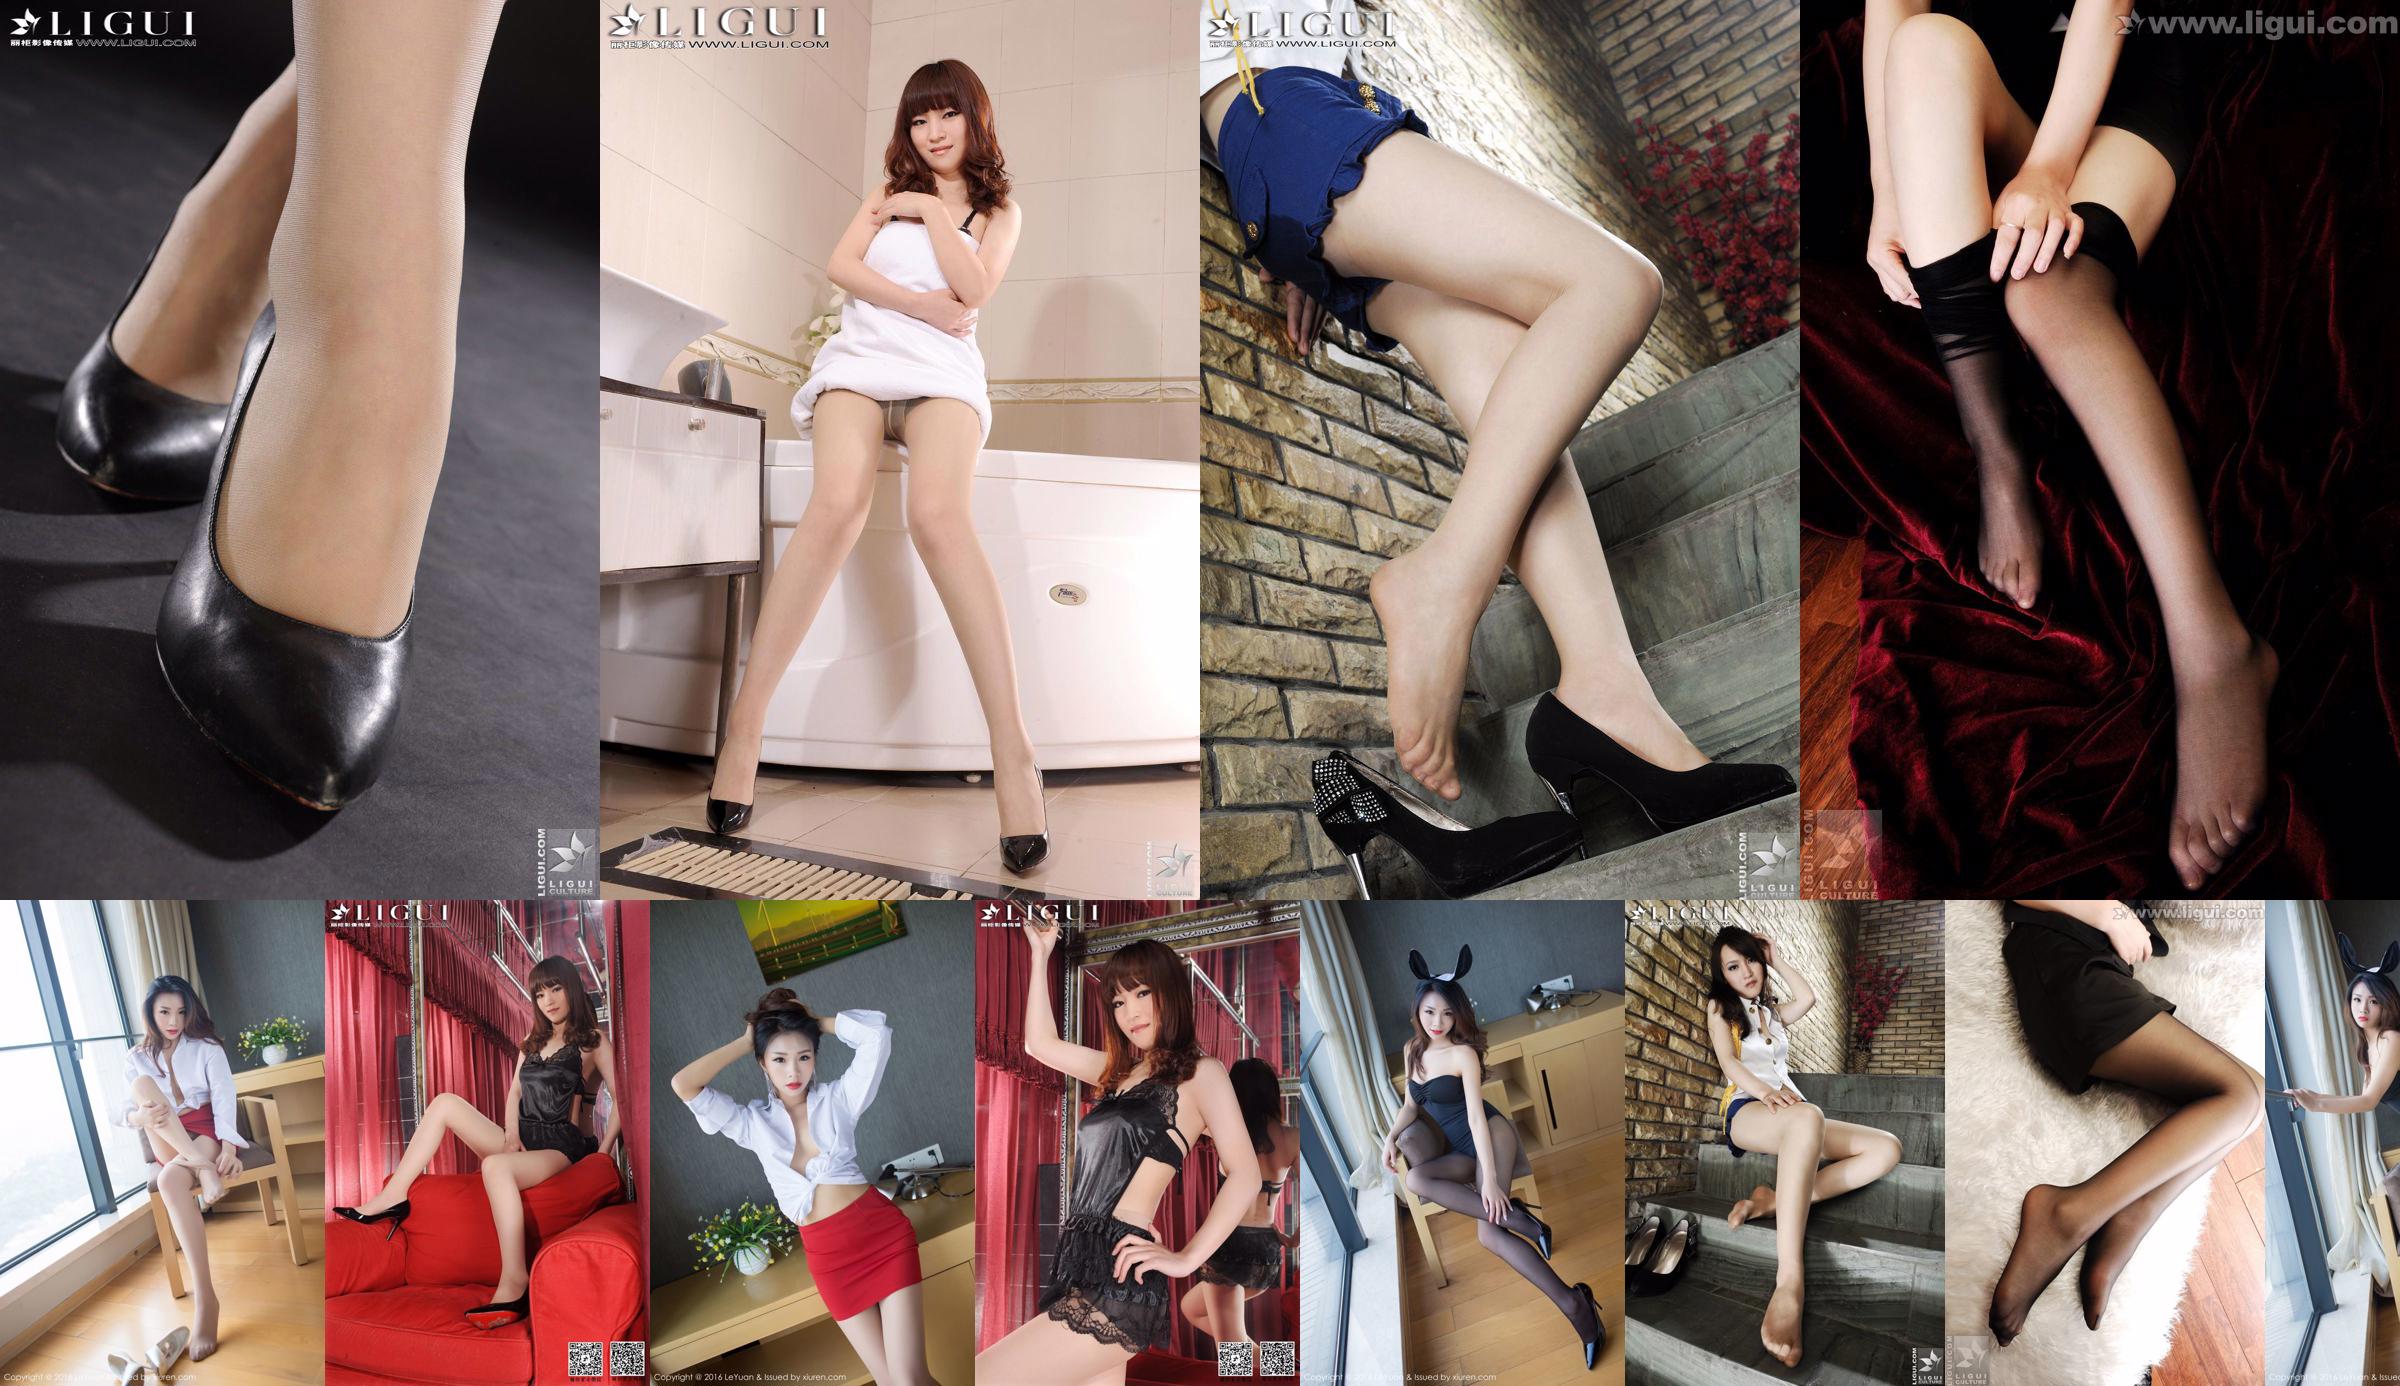 Model Tina "Lace Dudou + Meat Stockings Feet" Complete Works [丽 柜 贵 足 LiGui] Piękne nogi i jadeitowe stopy zdjęcia zdjęcia No.f05855 Strona 1